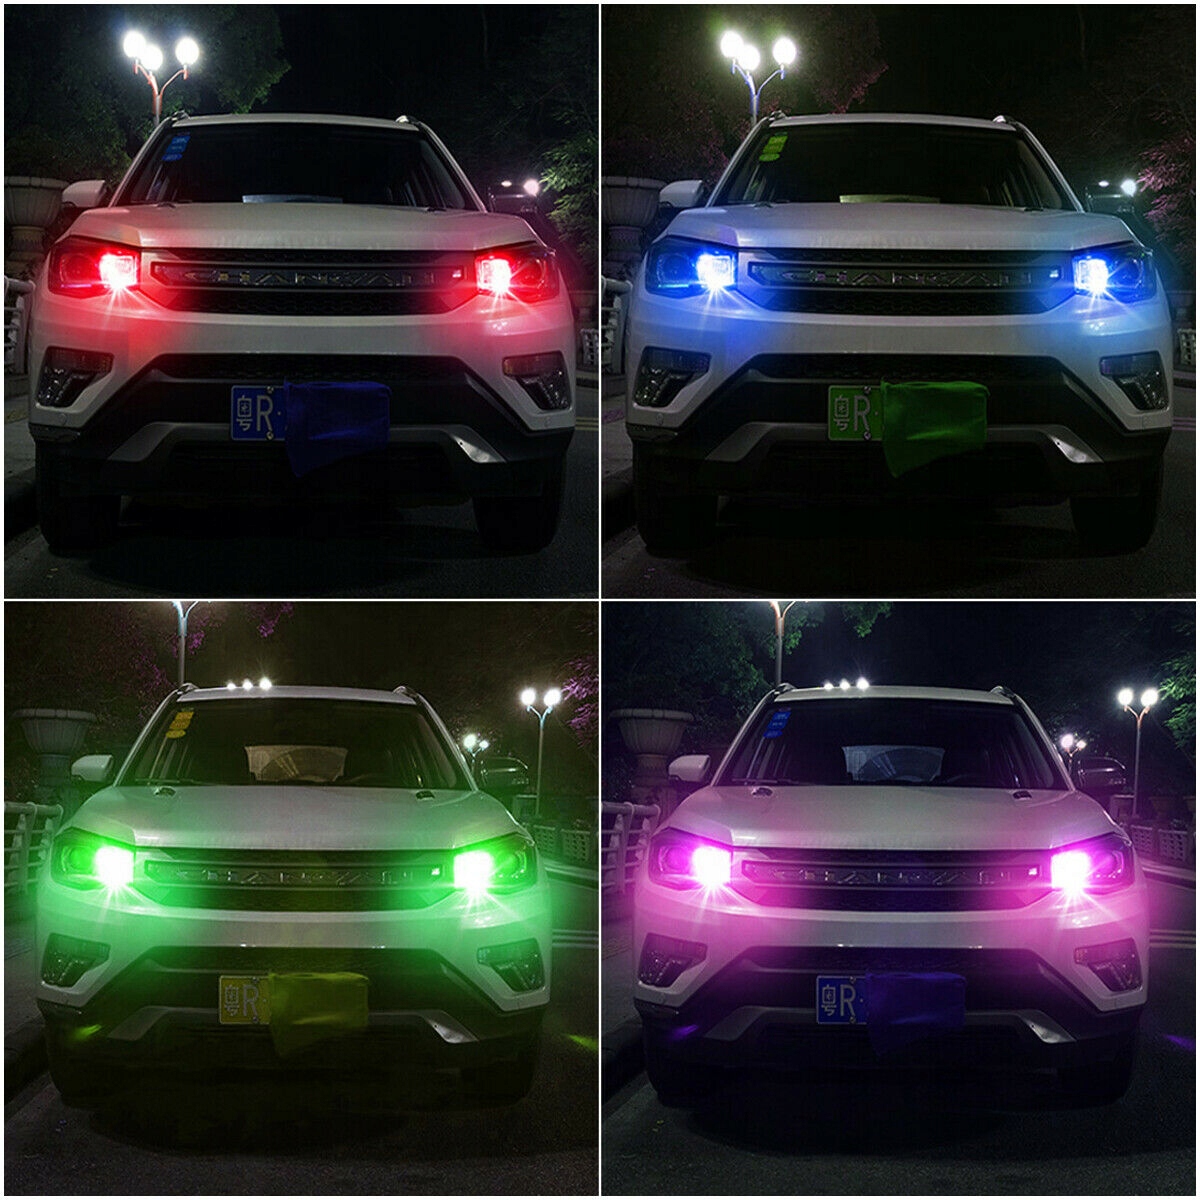 [2 ZAROWKI W5W LED T10 RGB + PILOT PORSCHE AUDI VW]изображение 11